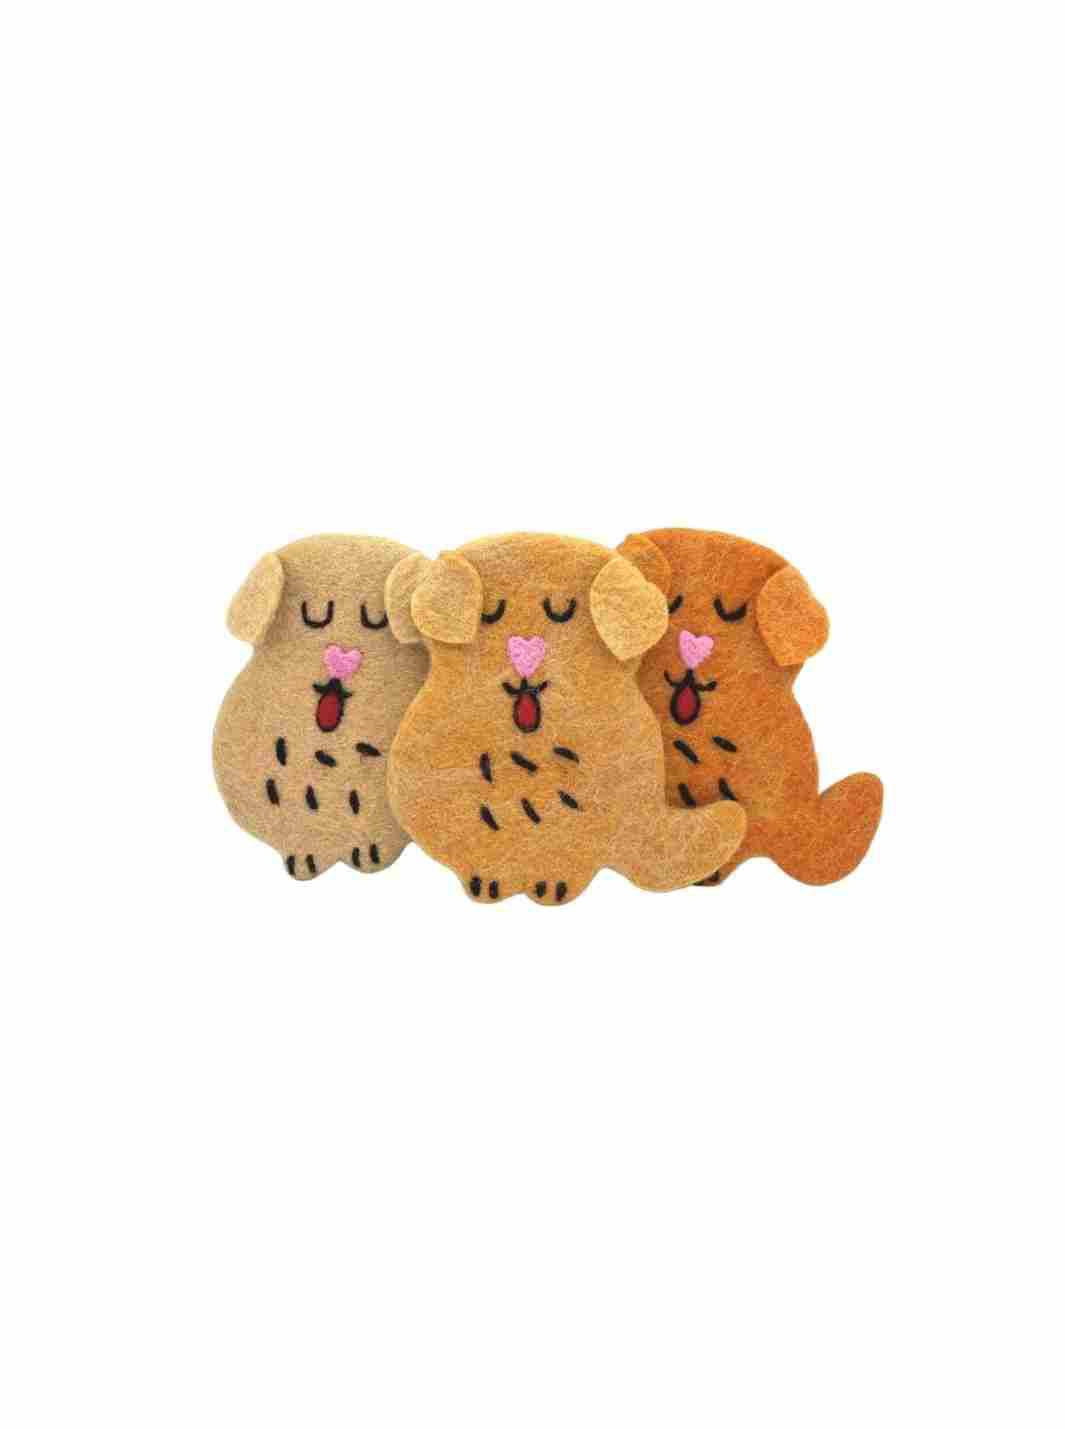 Eco Coaster - Golden Retriever Dog (Cream) | Eco Dog Coaster | Drink Coaster | Dog Coaster | Eco Dog & Cat